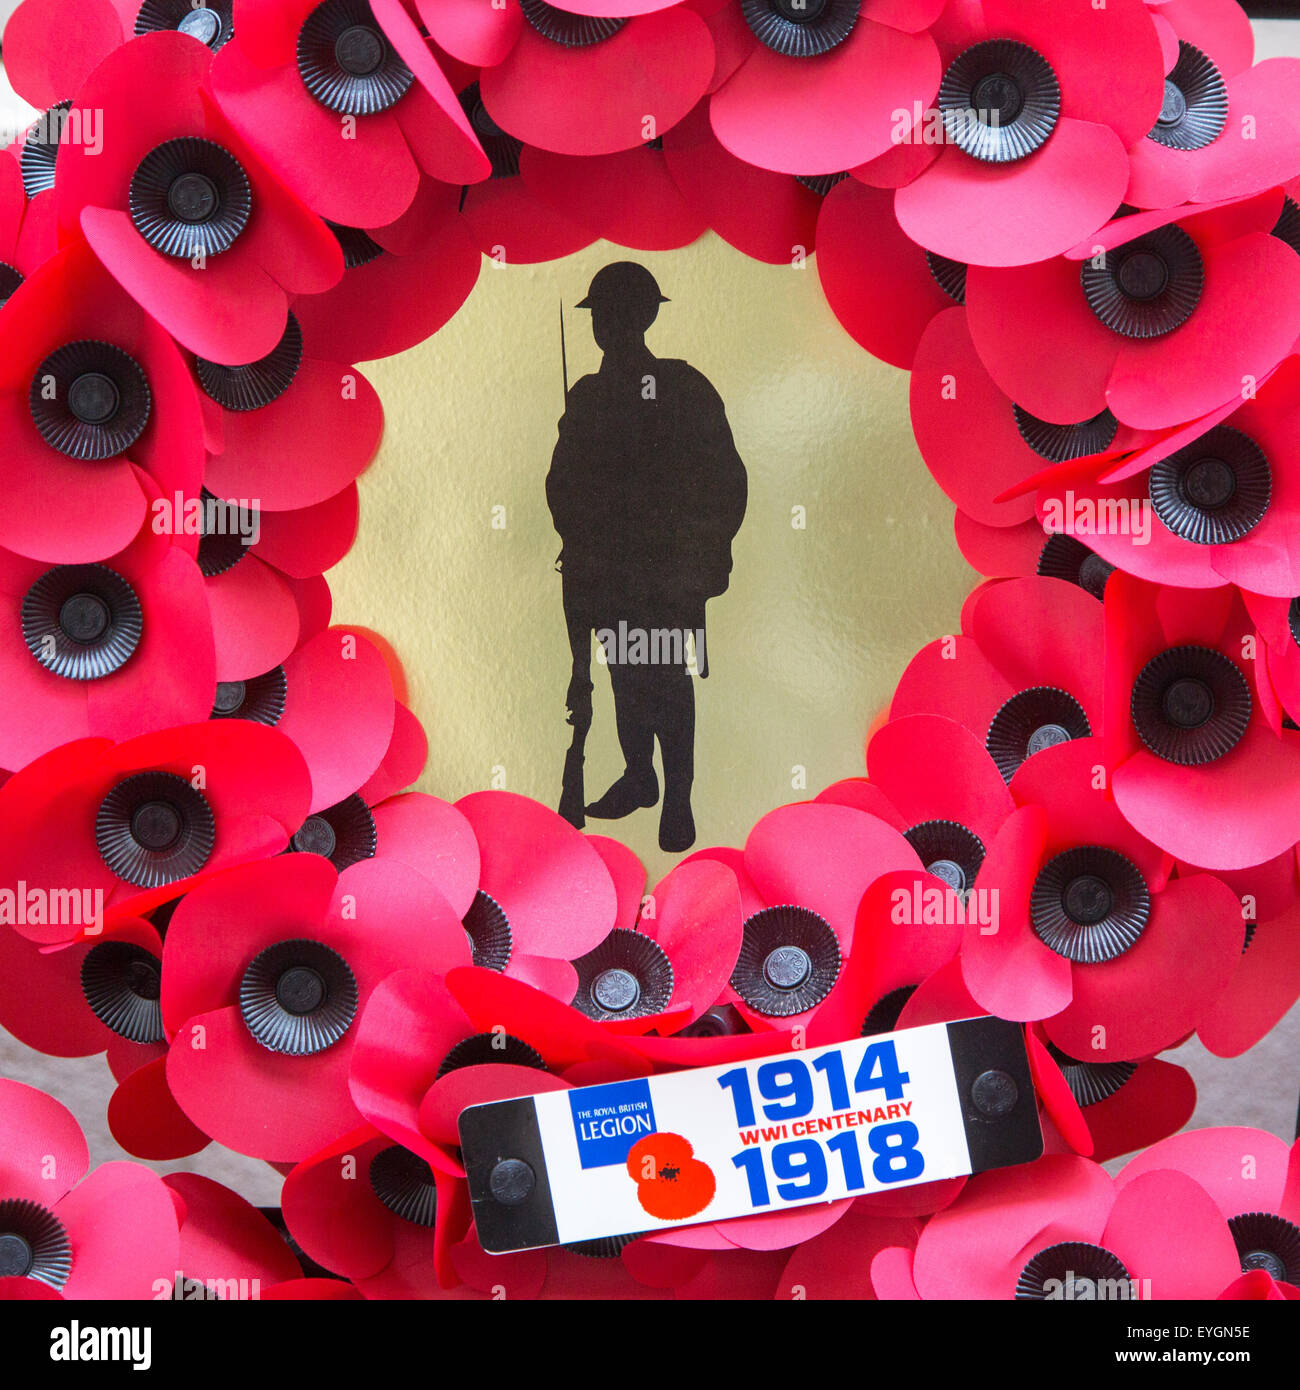 Corona de adormidera británico durante la primera guerra mundial uno de los soldados durante la conmemoración del centenario de la PRIMERA GUERRA MUNDIAL Foto de stock